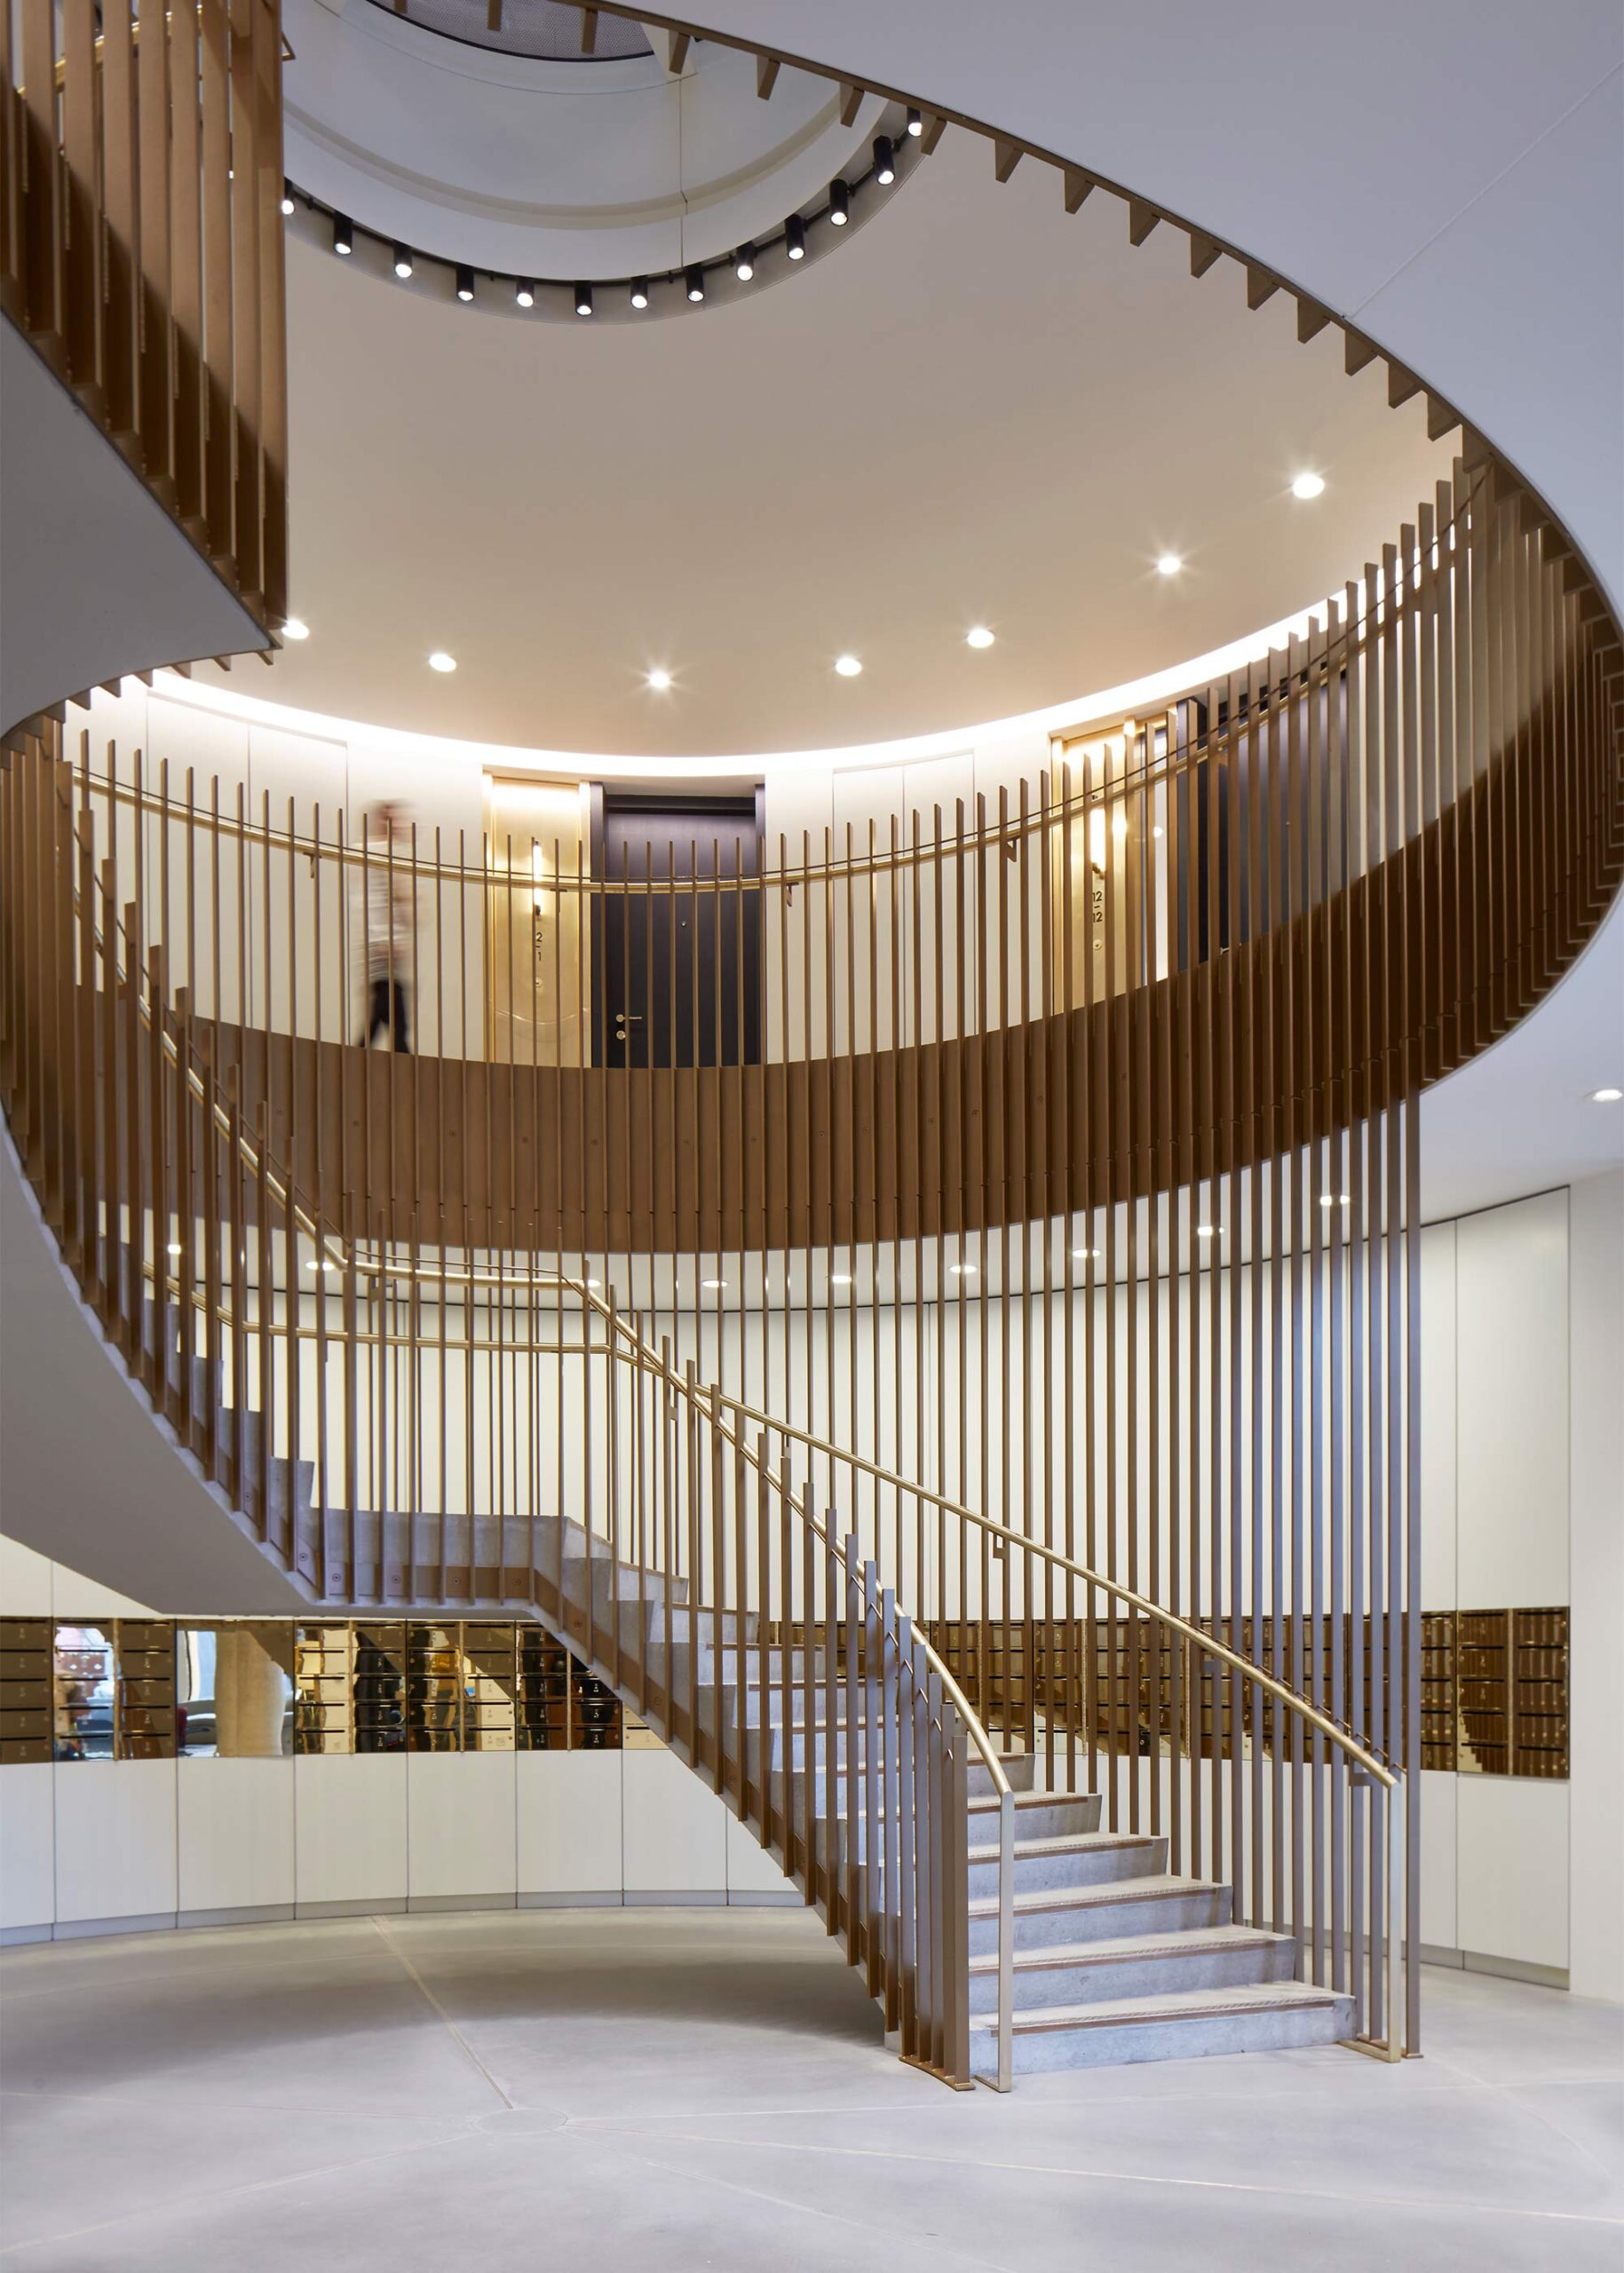  La cage d'escalier de la réception s'inspire de la mécanique horlogère par sa matérialité et sa forme.